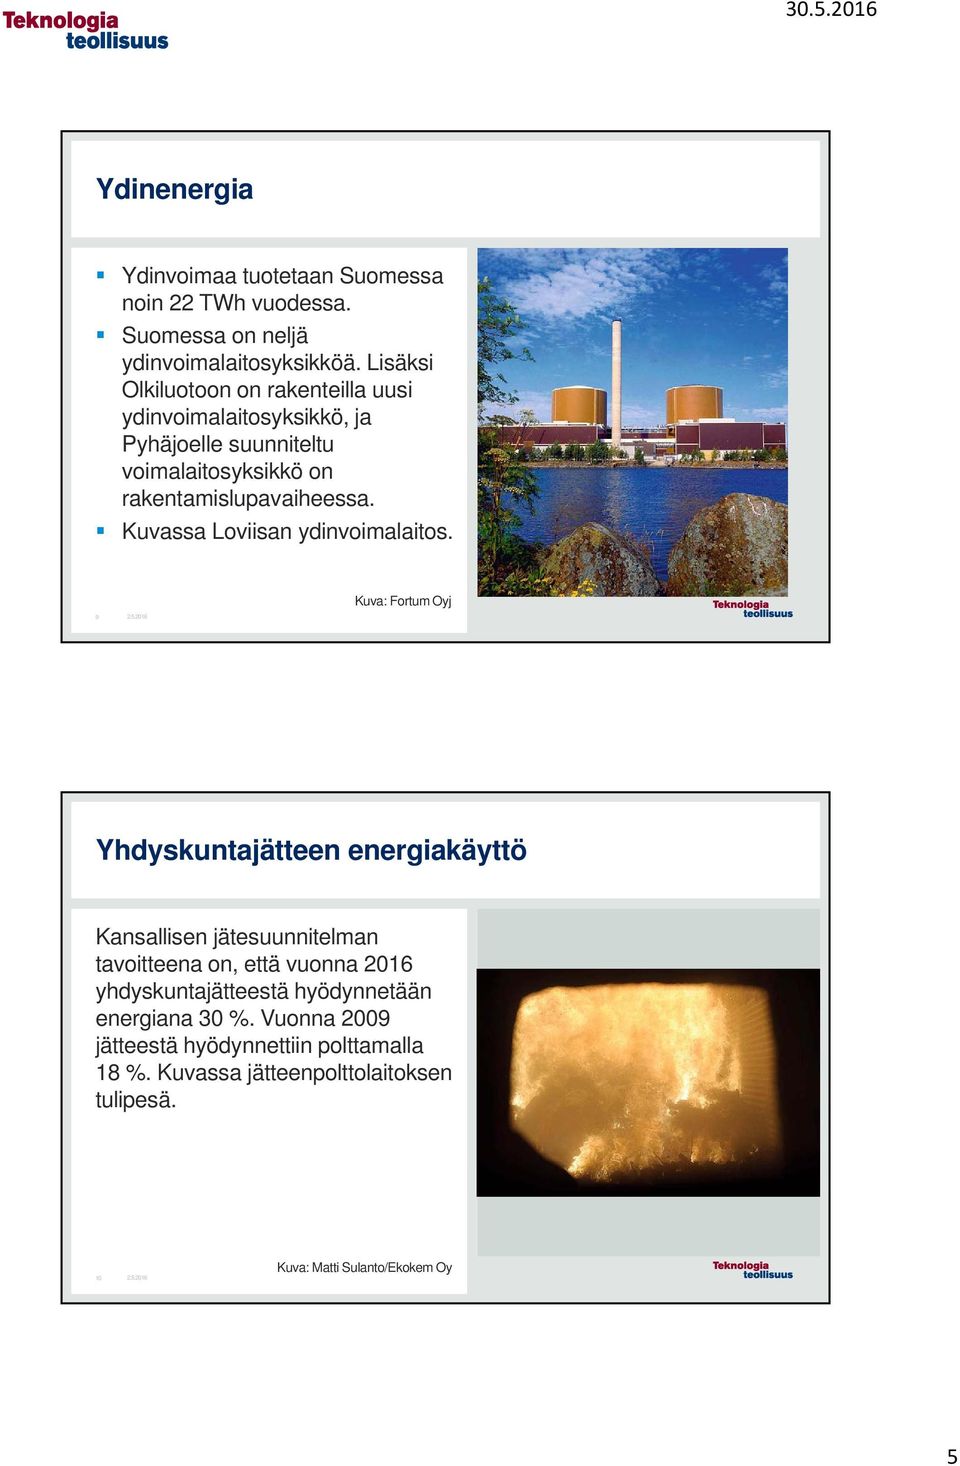 Kuvassa Loviisan ydinvoimalaitos.